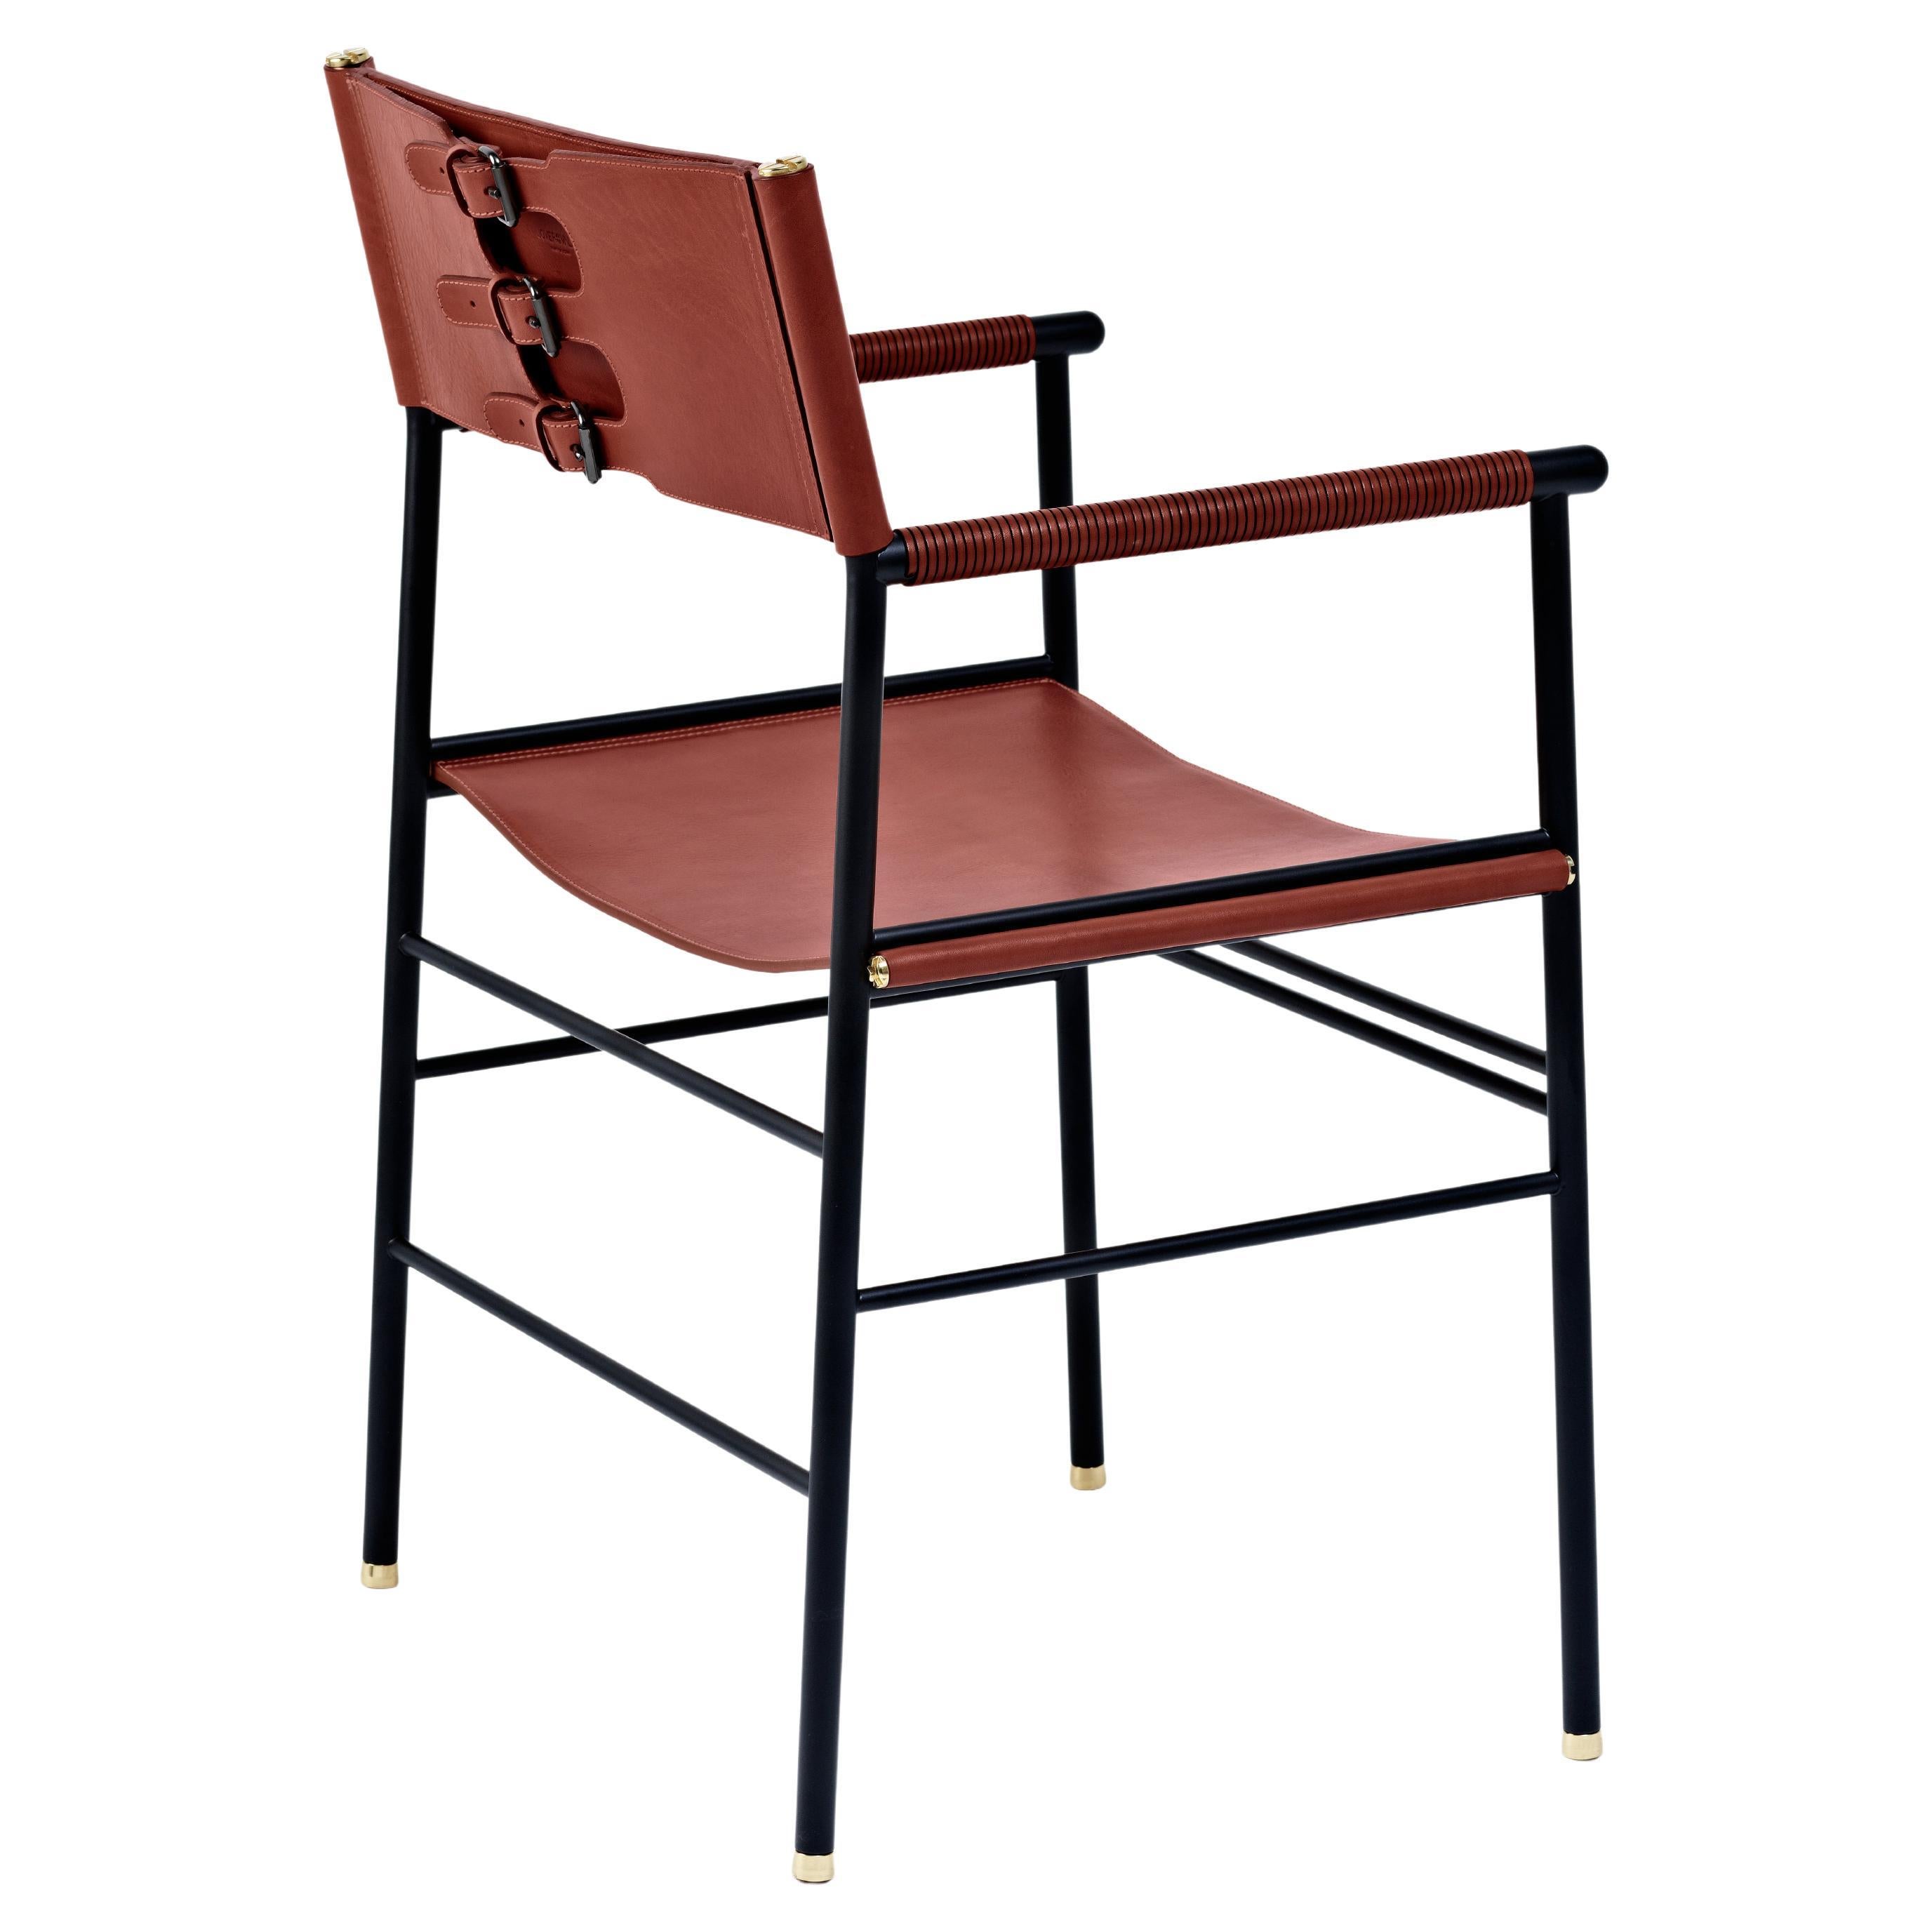 Chaise contemporaine artisanale en cuir cognac et métal en caoutchouc noir en vente